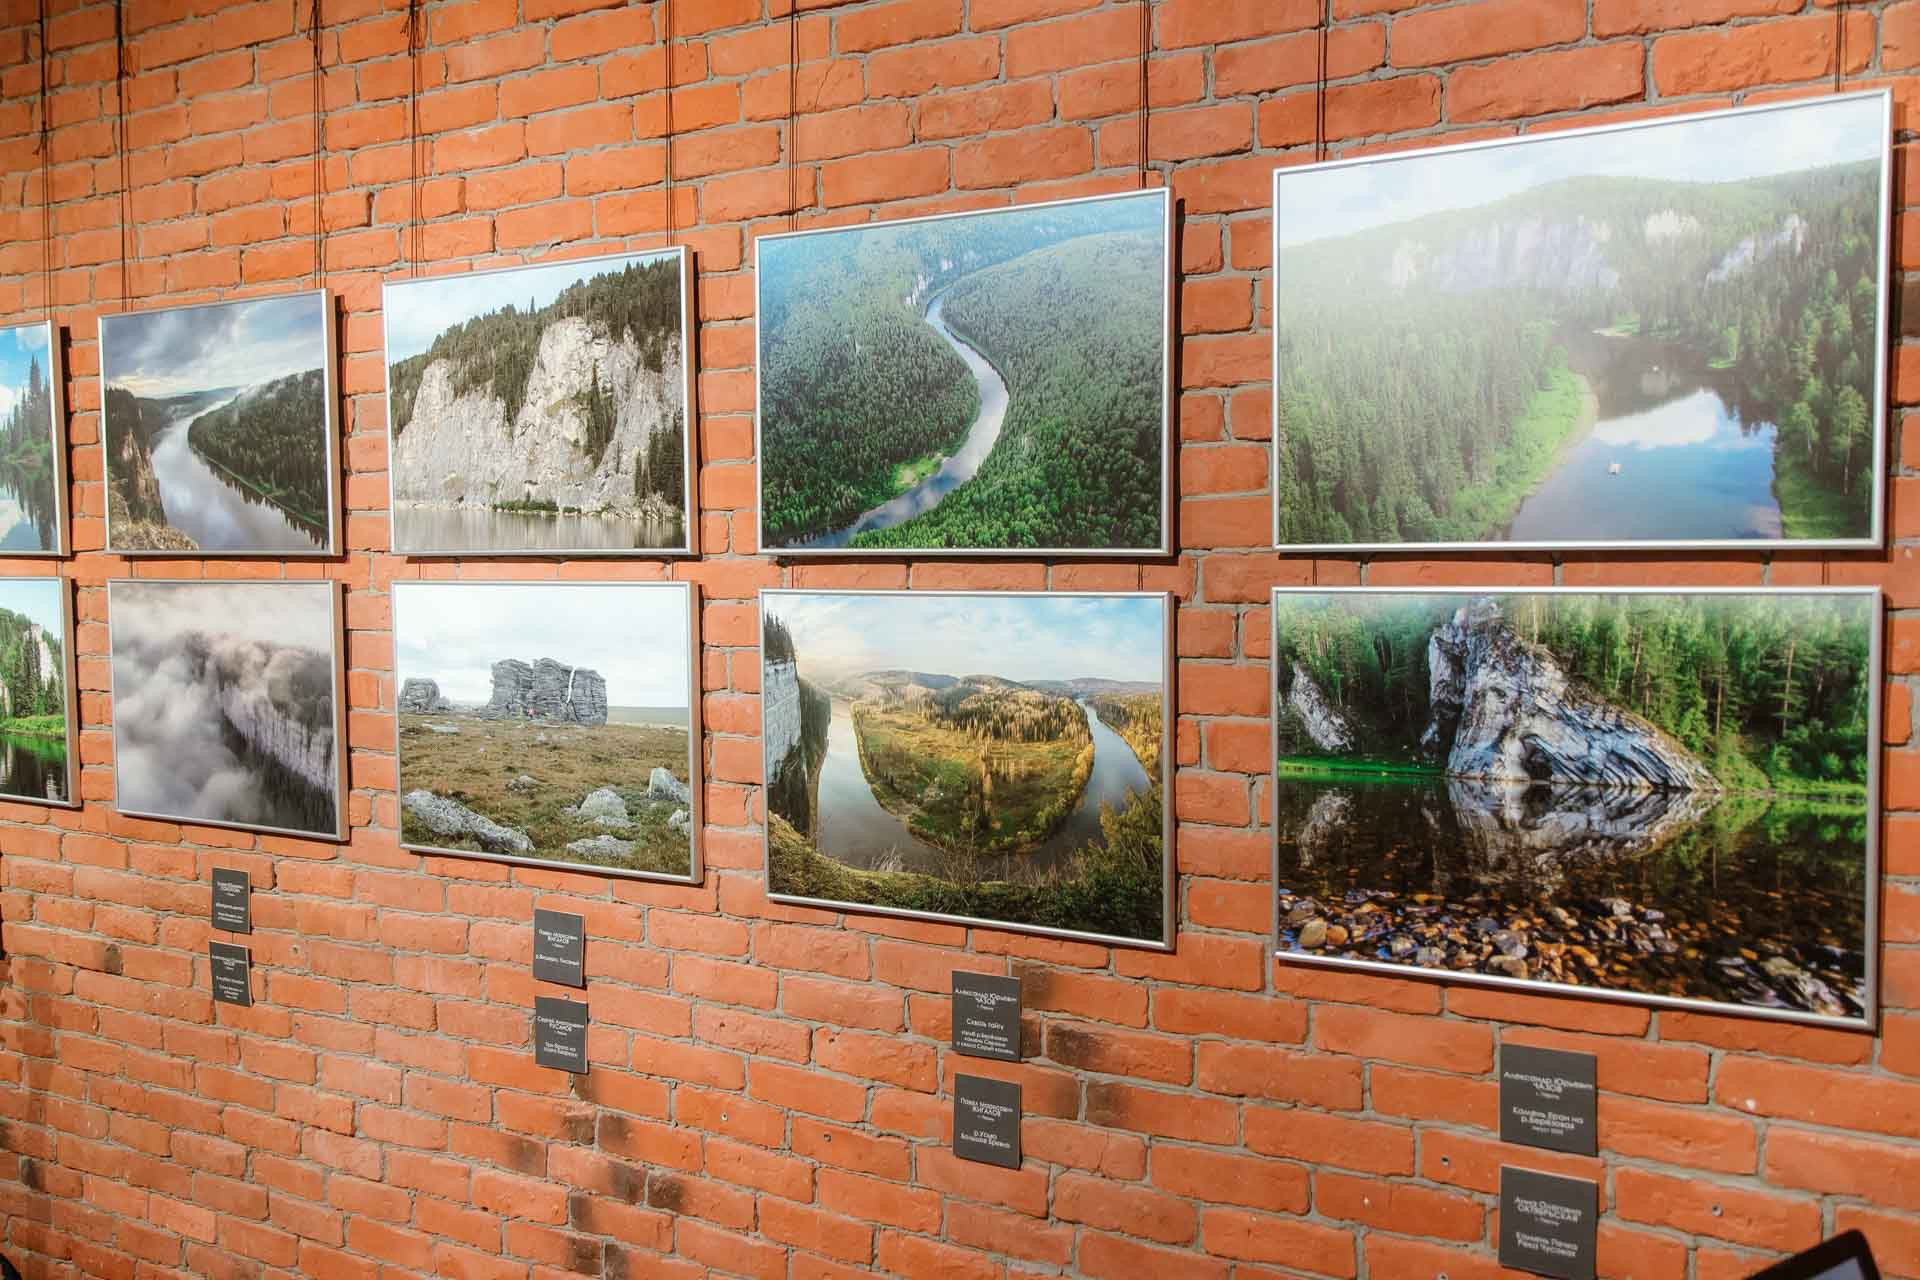 На выставке были представлены фото красивых уголков Пермского края, а также сюжеты с представителями флоры и фауны